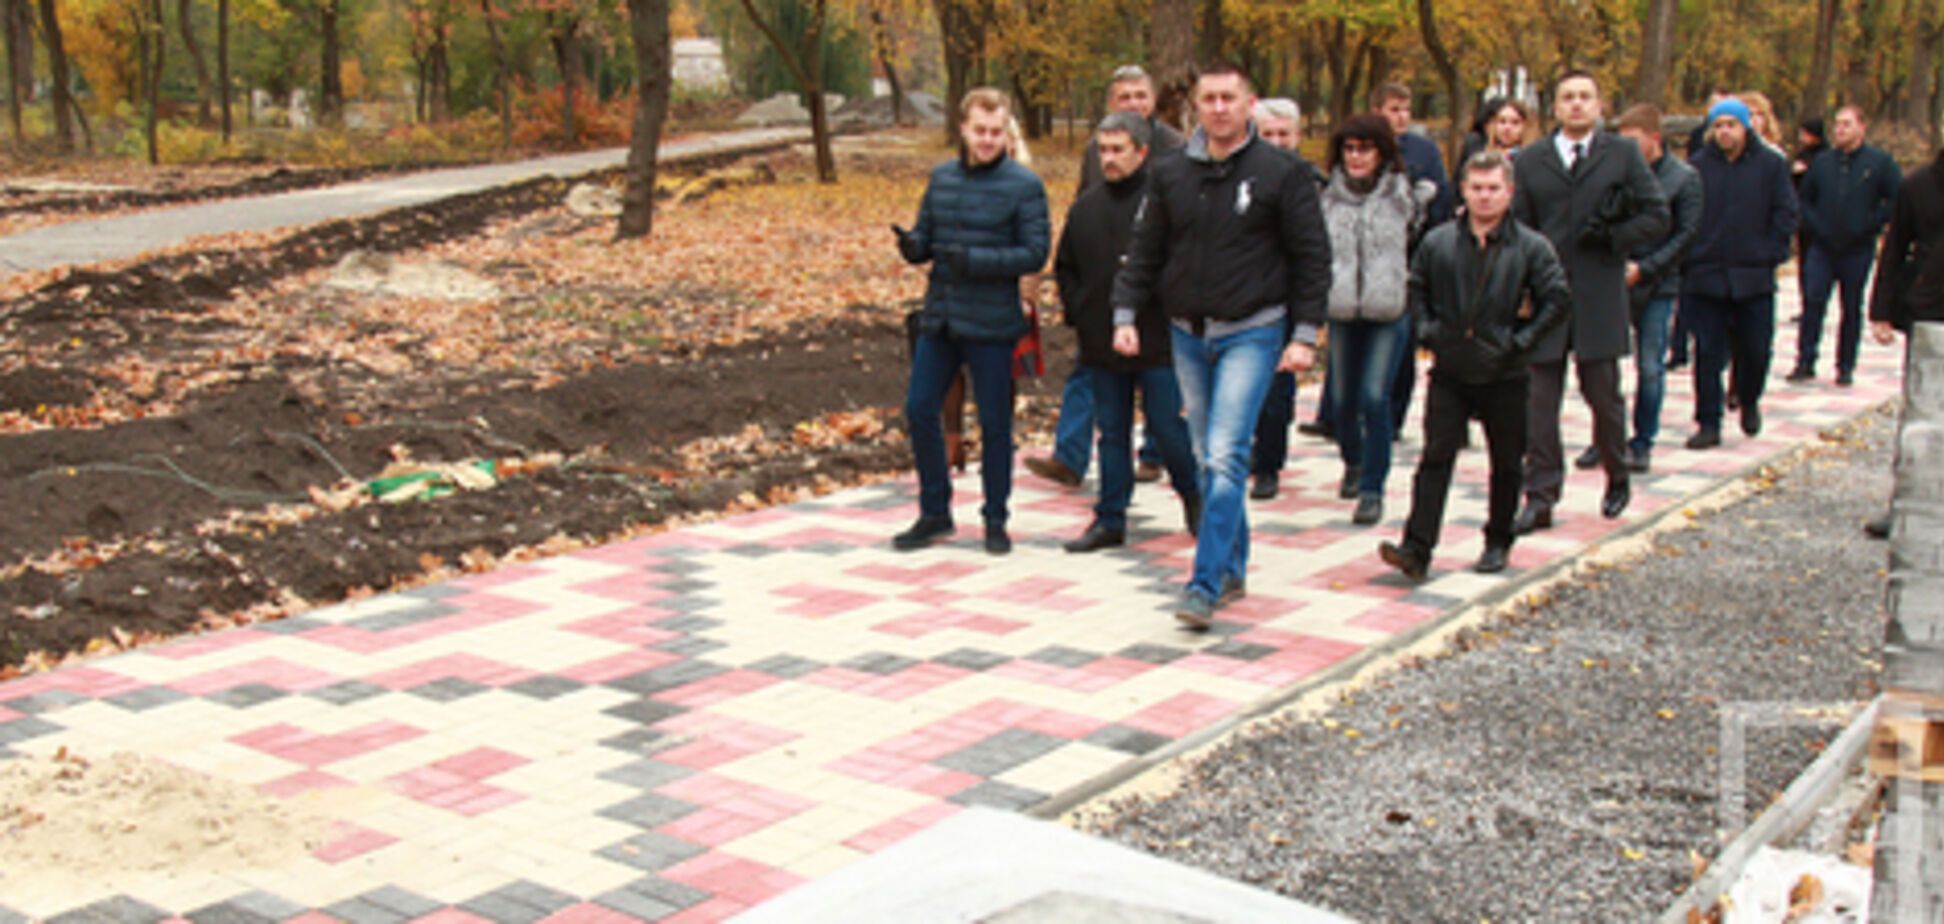 Мэрия Кривого Рога хочет остановить строительство самой большой каменной вышиванки в Украине